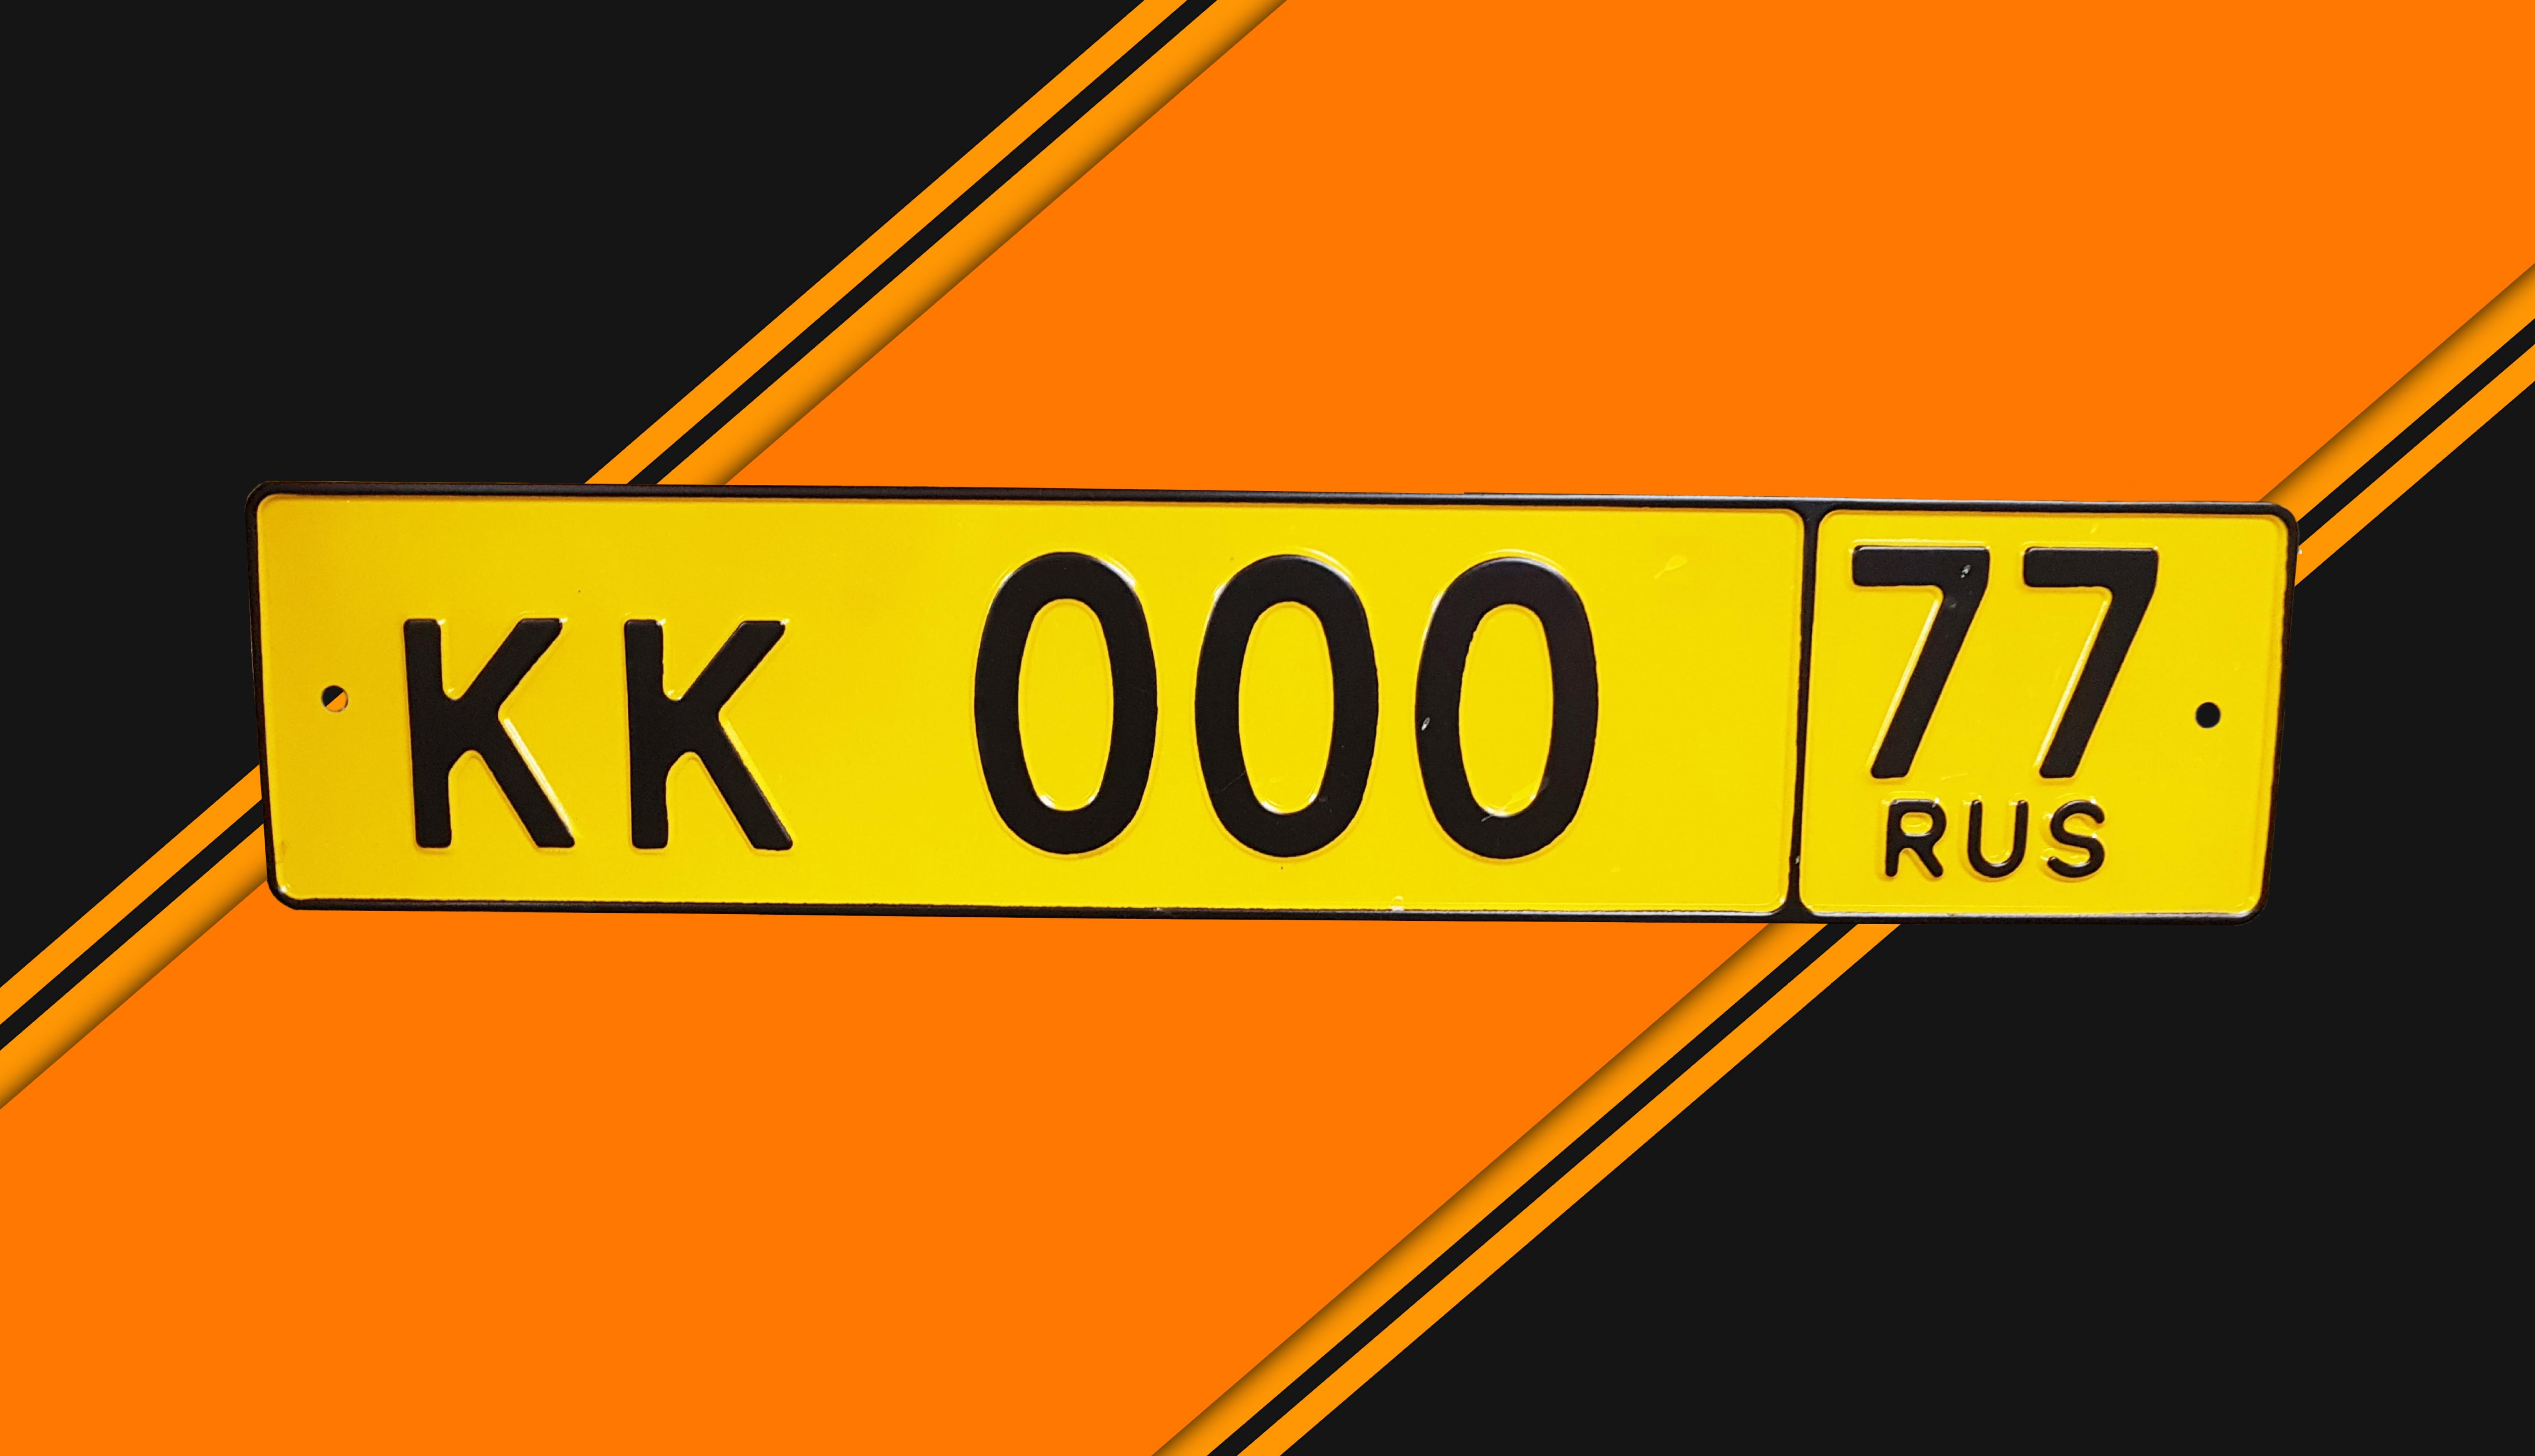 Автомобильный номерной знак для такси желтого цвета КК000 77ru